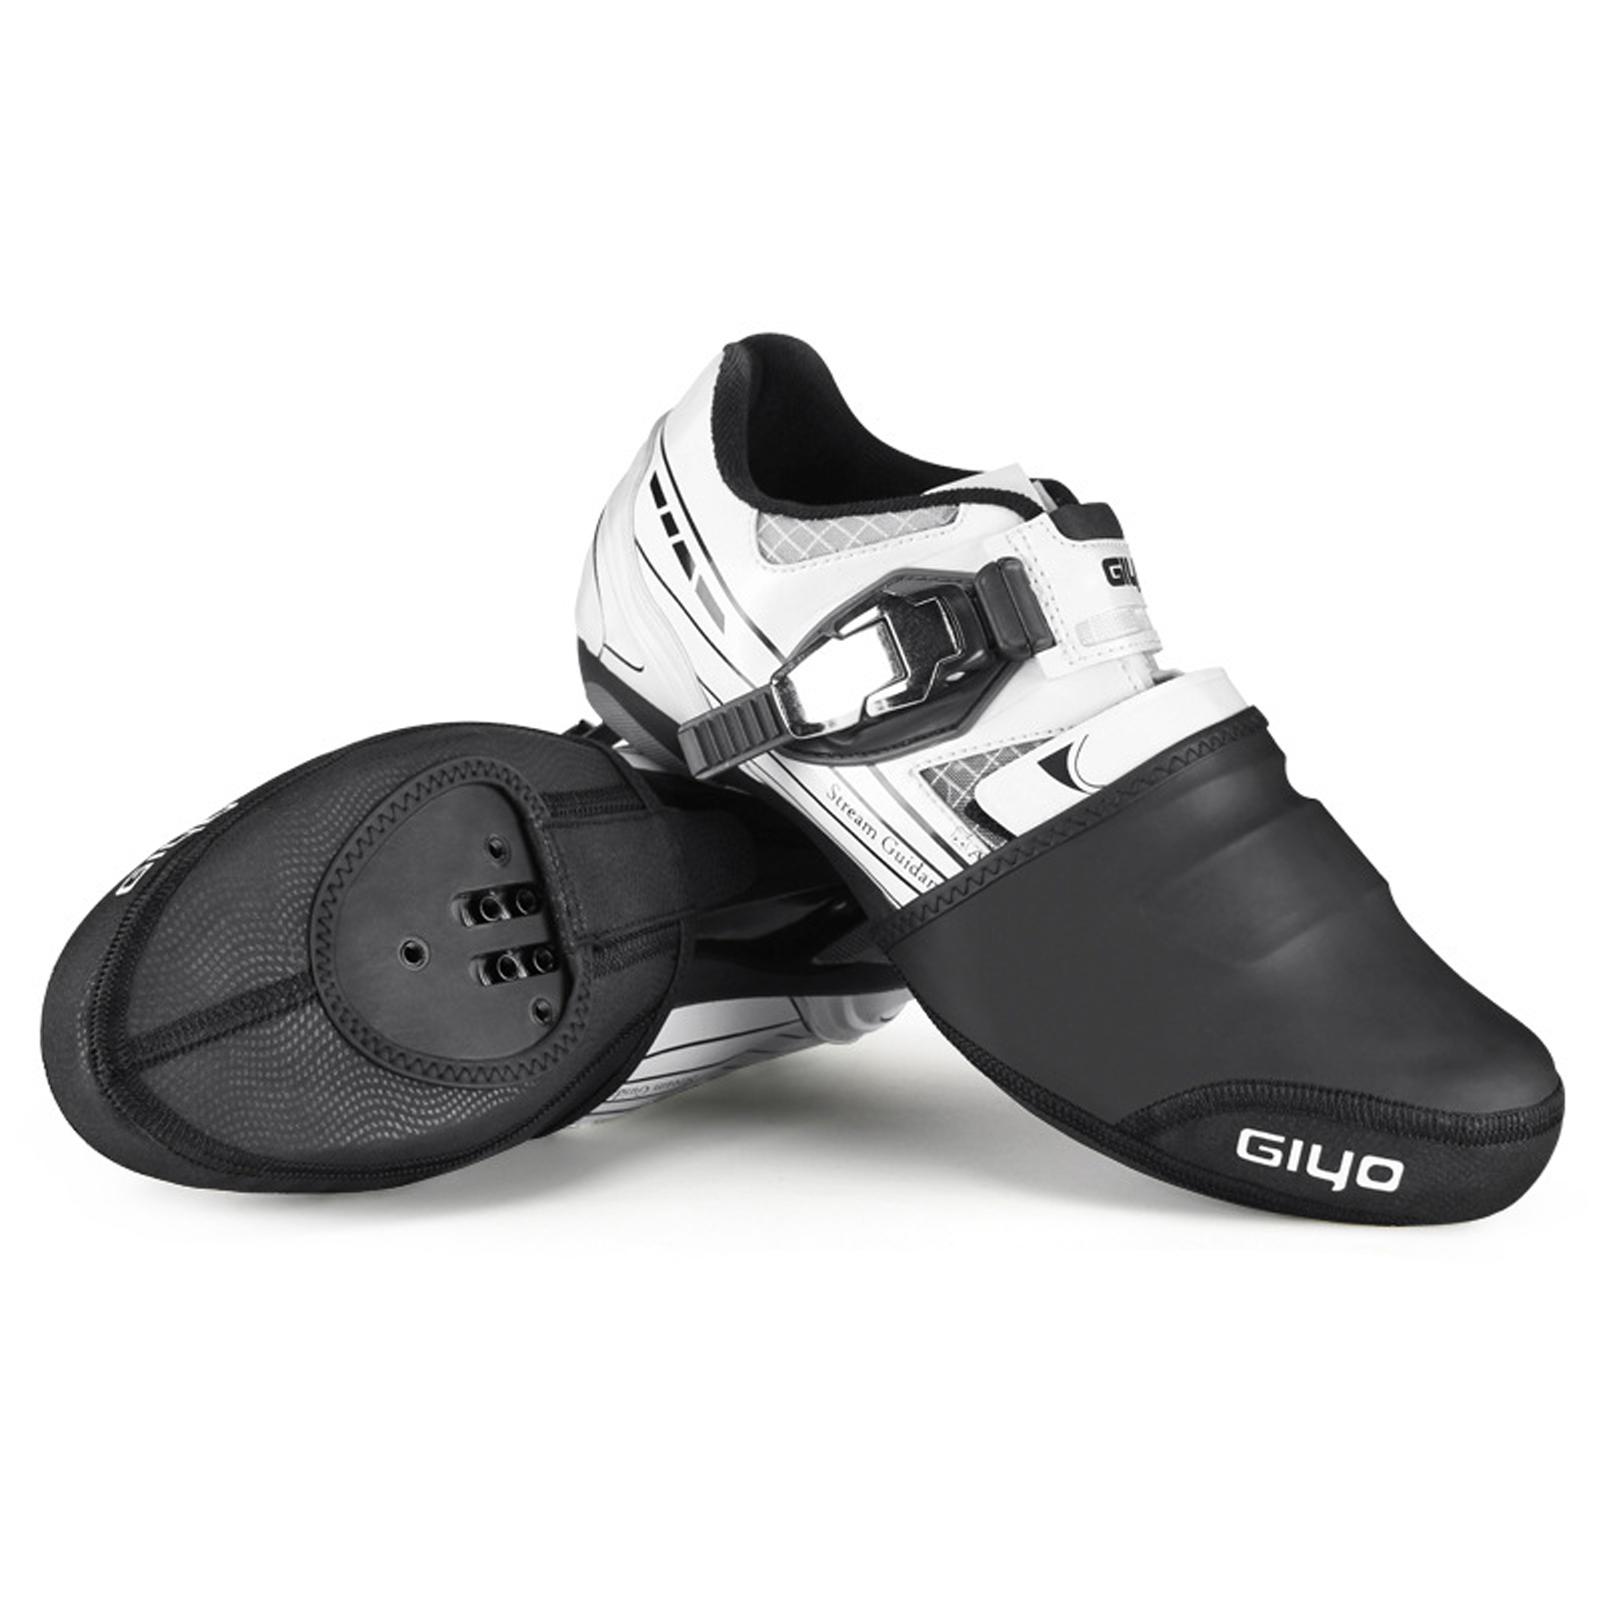 Hình ảnh Vỏ bảo vệ giày đi xe đạp GIYO thiết kế nửa lòng bàn tay chất liệu vải đàn hồi cao chống trượt và chống mài mòn.